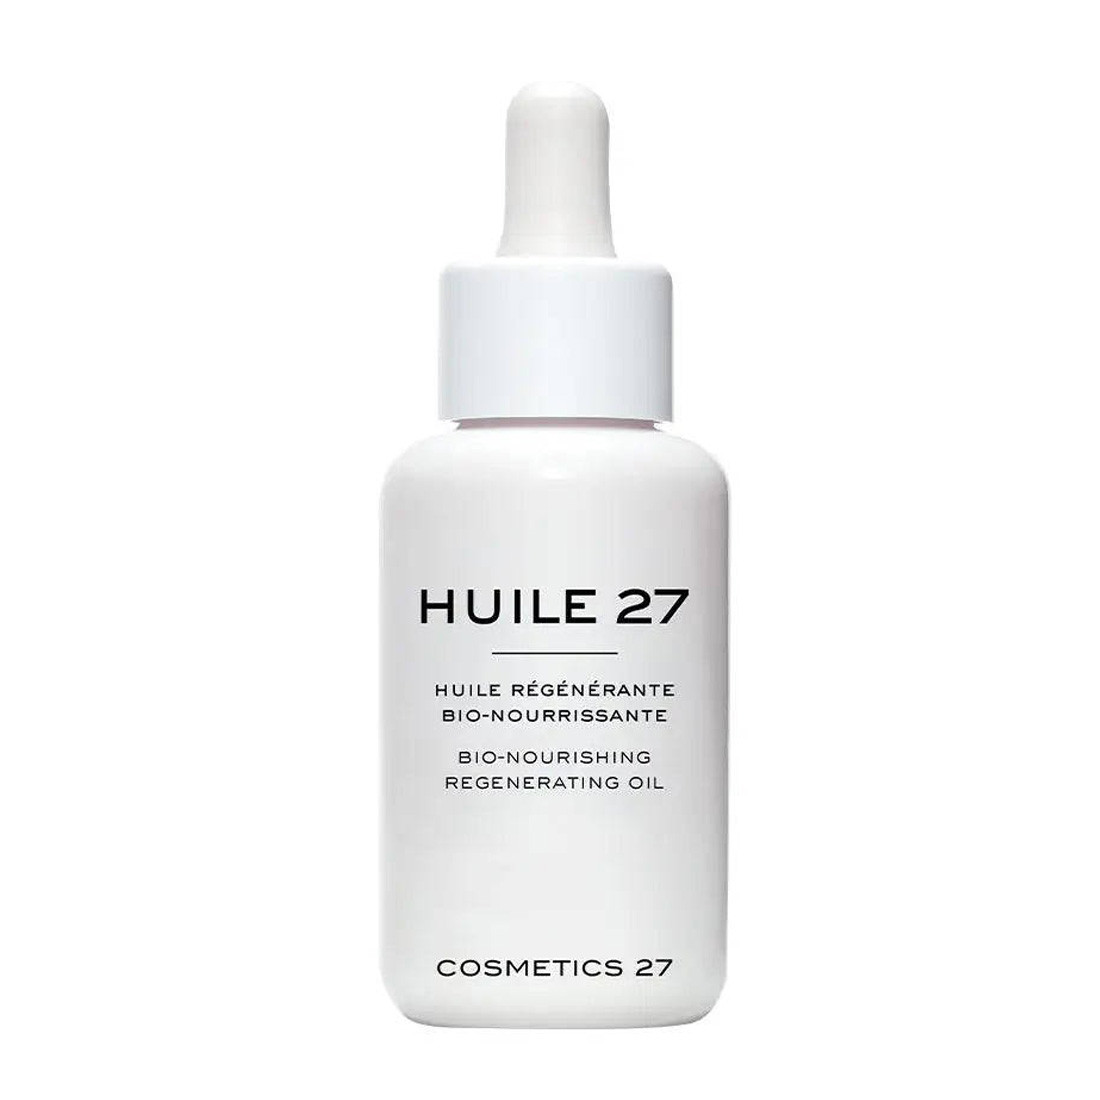 Питательное масло для регенерации кожи Cosmetics 27 Hulie 27 Bio-Nourising Cell Regenerating Oil